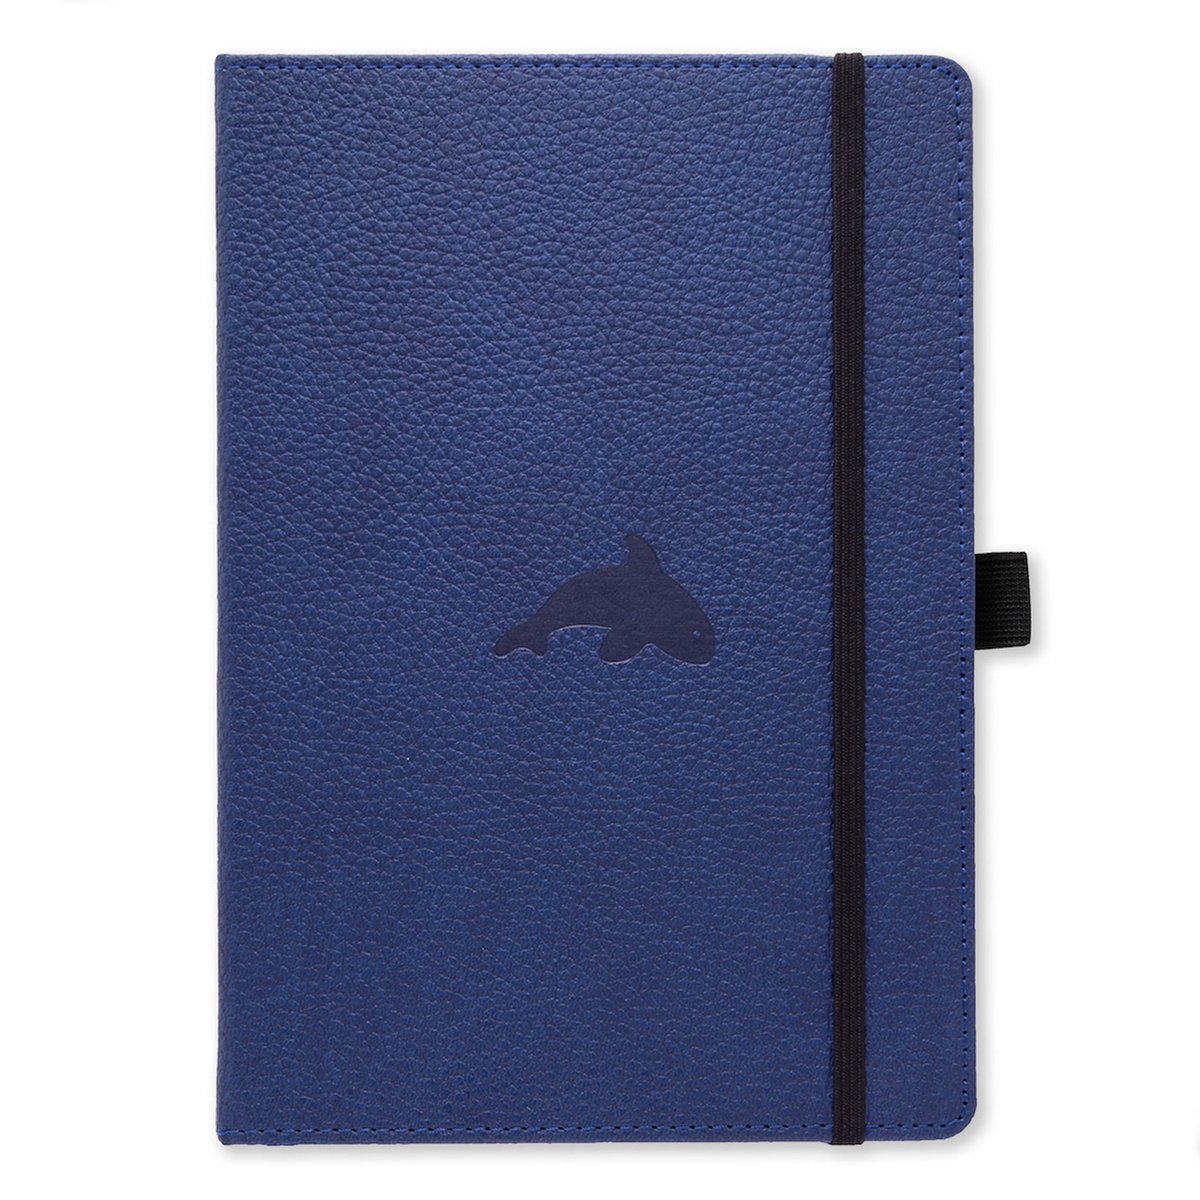 Dingbats* Wildlife A4 Notitieboek – Blue Whale Stippen – Bullet Journal met 100 gsm Inktvrij Papier – Schetsboek met Harde Kaft, Elastische Sluiting en Bladwijzer